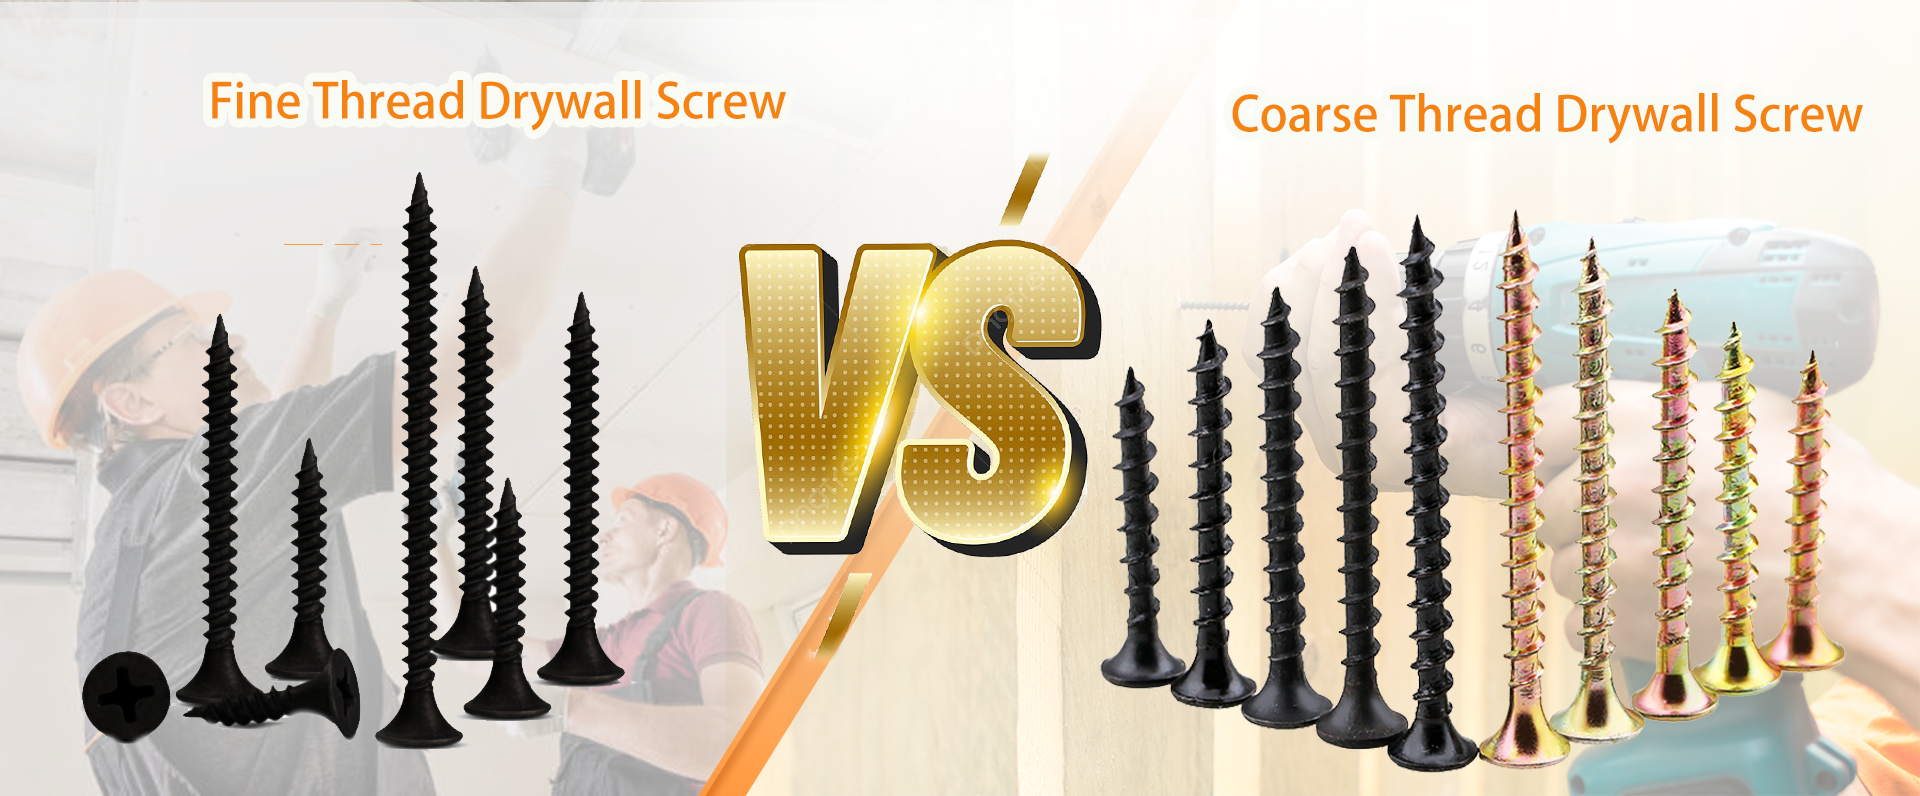 coarse Thread VS fine Thread drywall screw